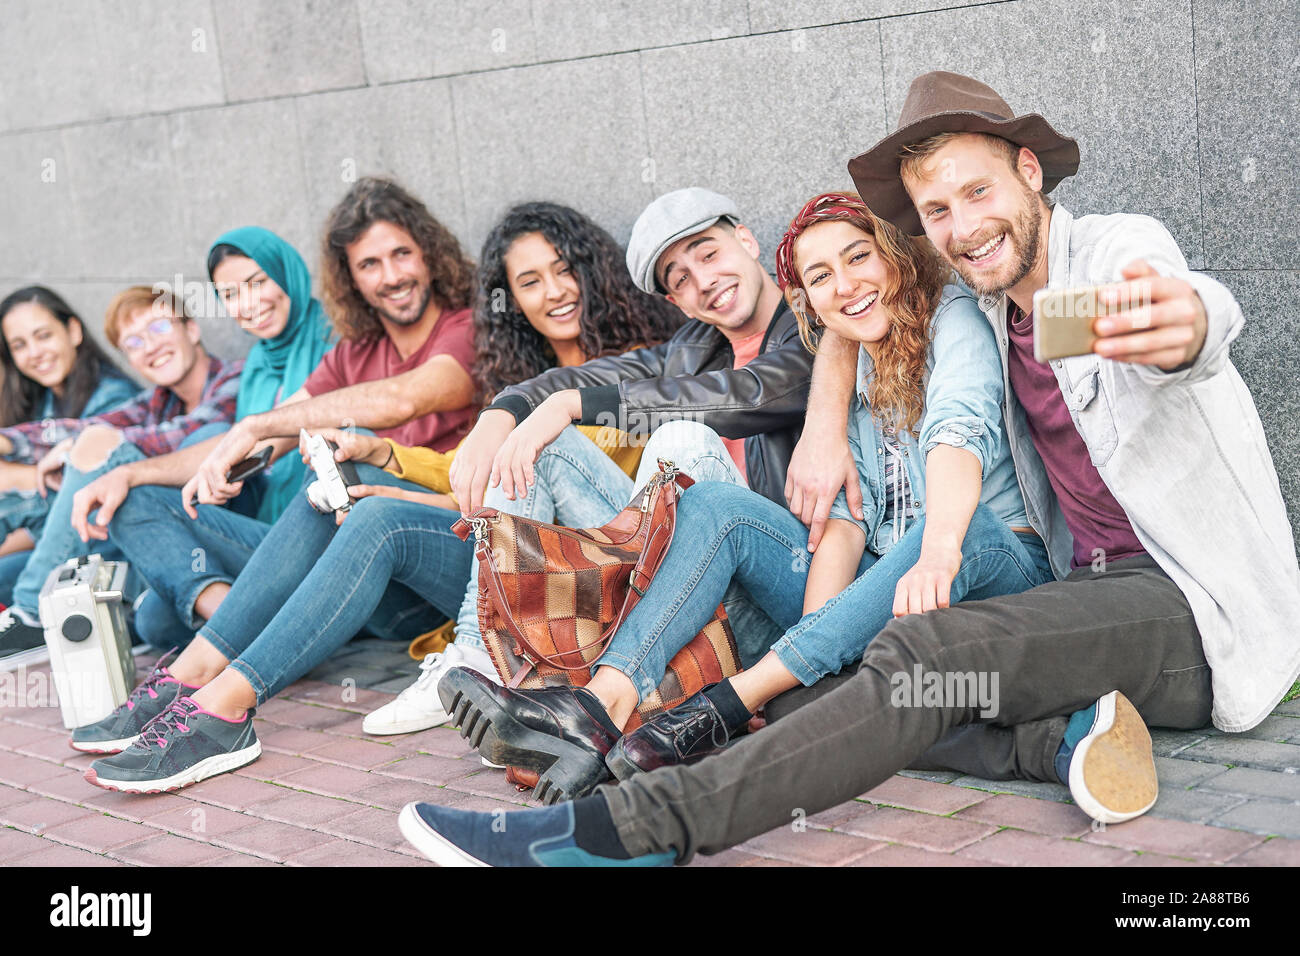 Gerne diverse Freunde unter selfie mit mobilen Smart Phone Kamera-Tausendjährigen Jugendlichen Spaß Fotos machen für neue soziale Netzwerk trends Stockfoto